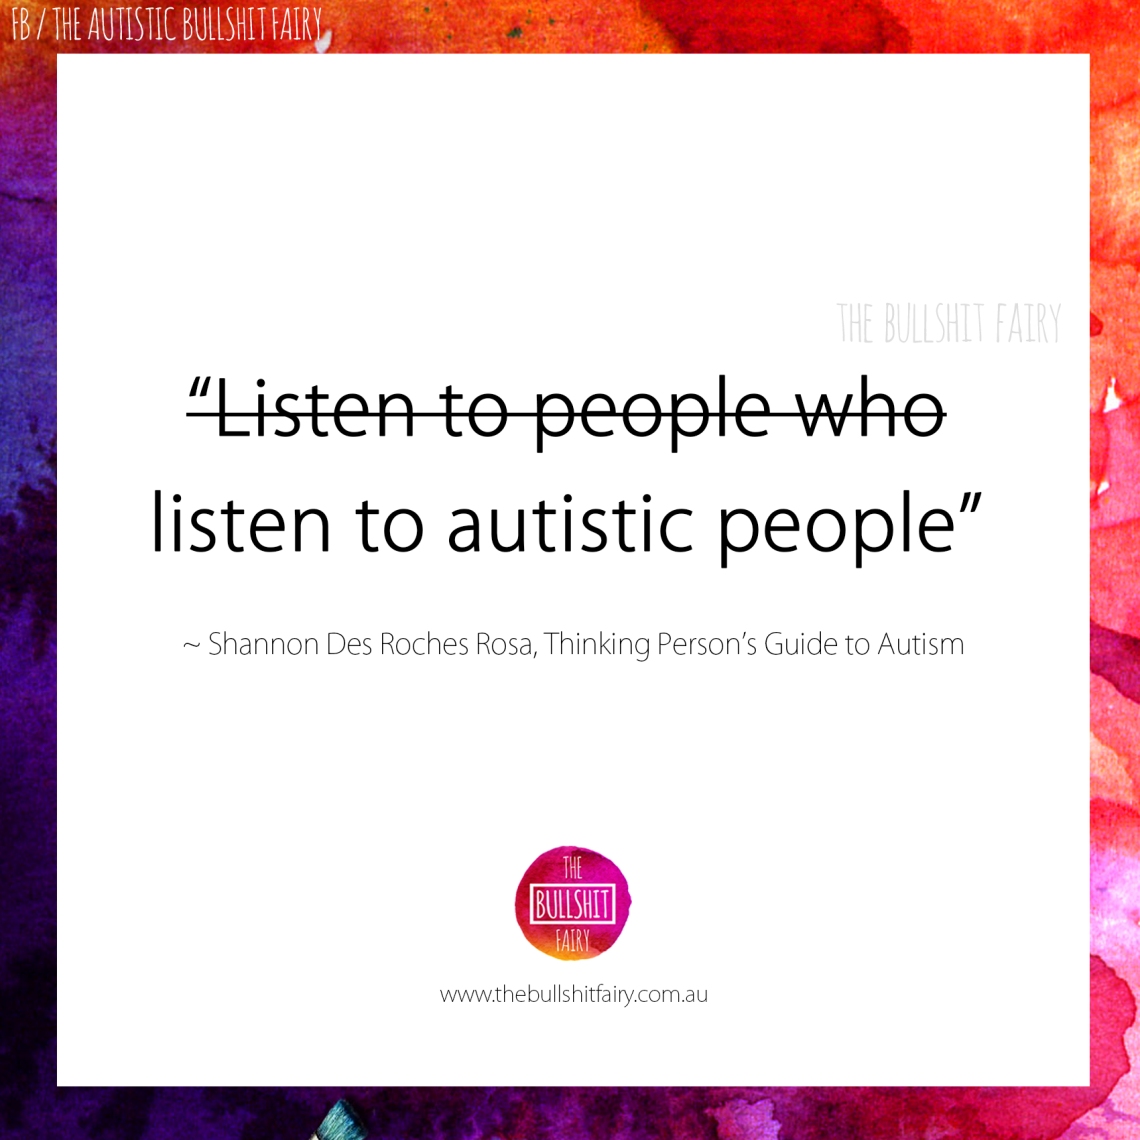 The Bullshit Fairy - Listen to Autistic People